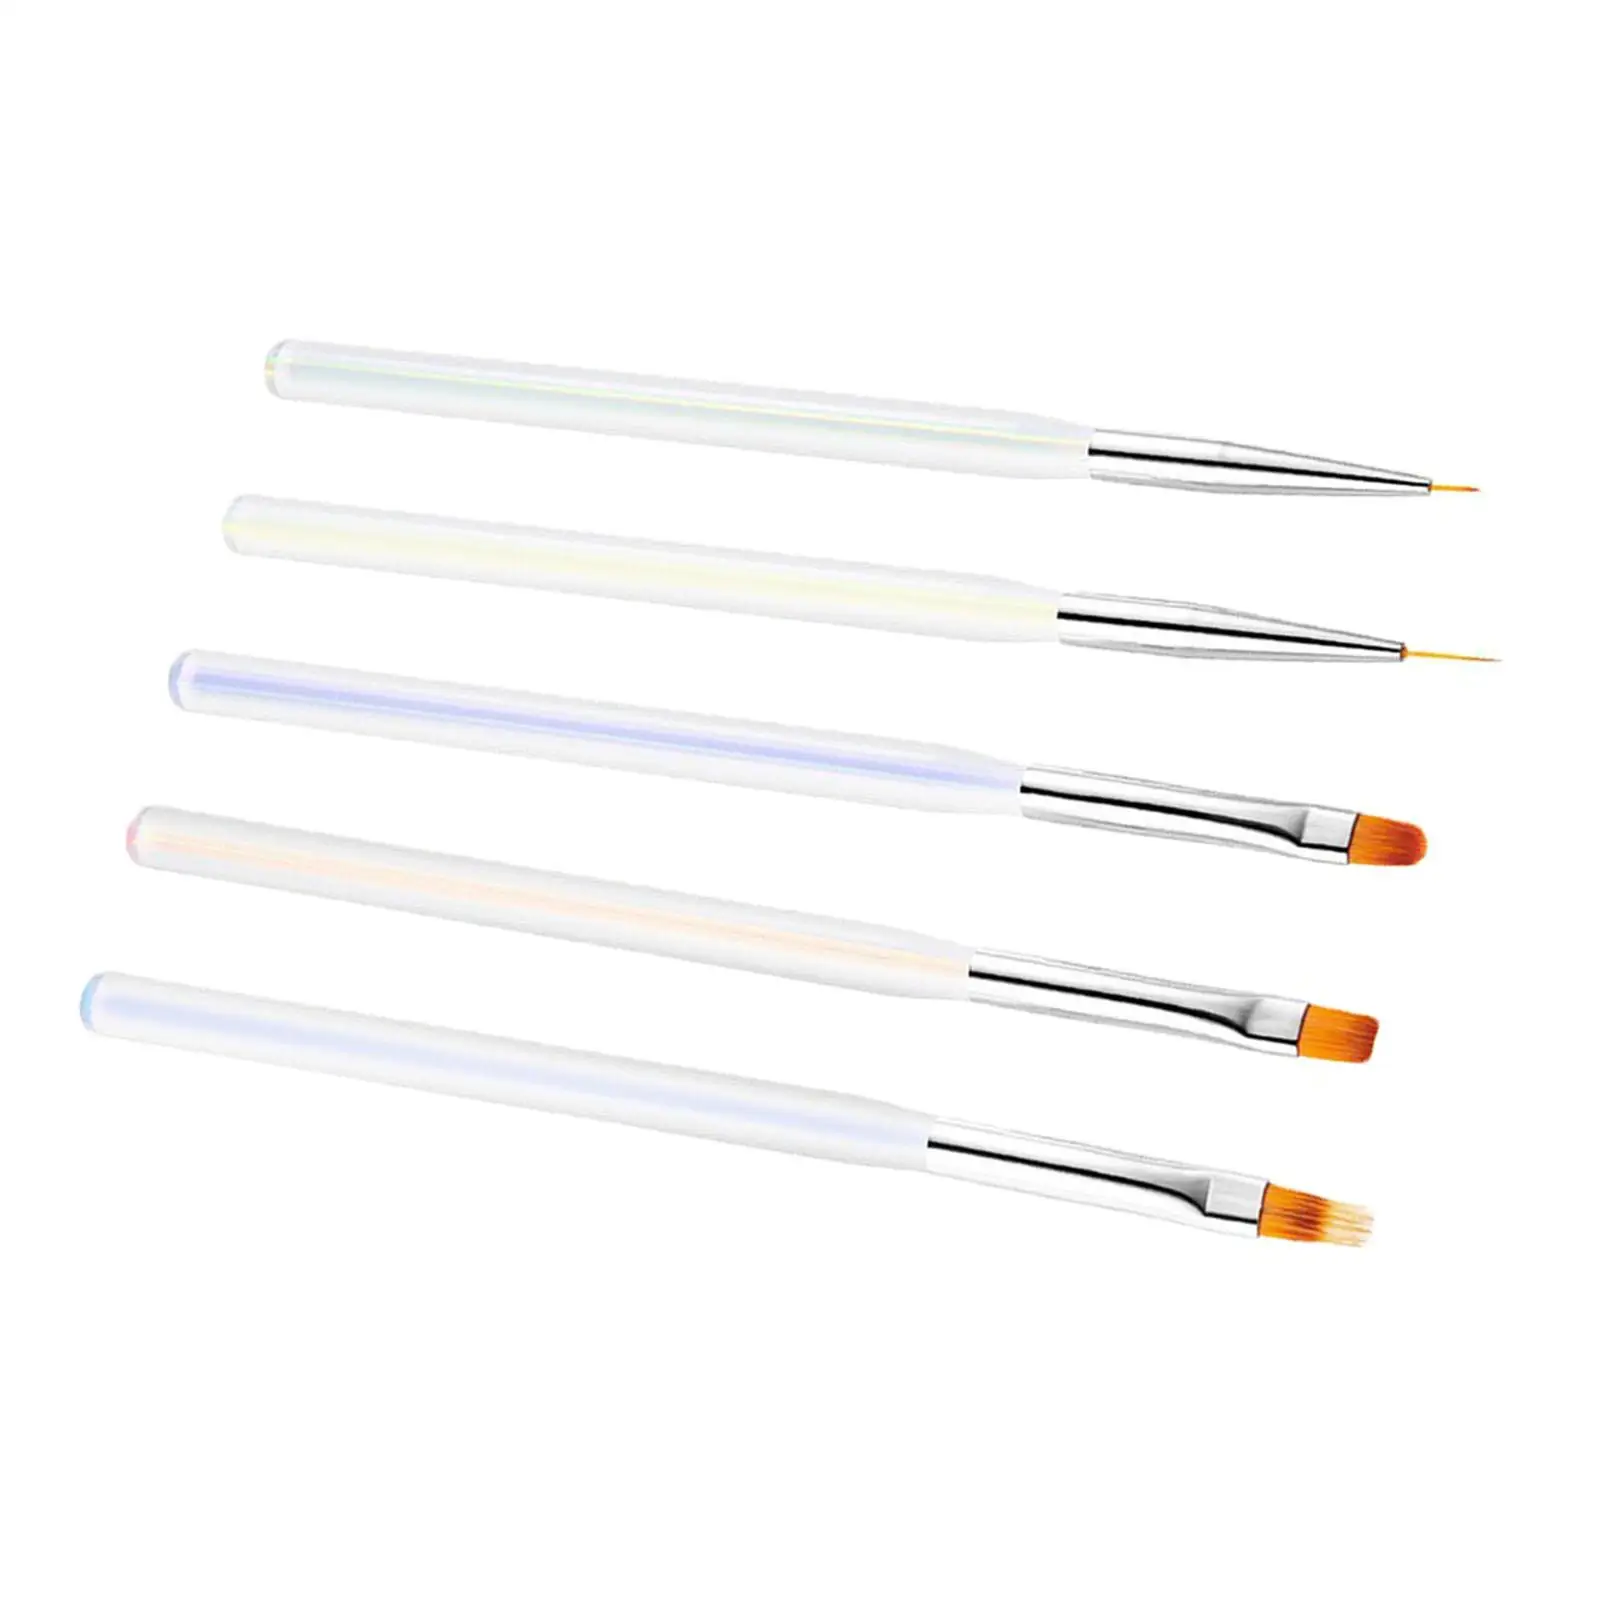 5Pcs Nail Art Brush Pen Manicure Tool Brush Tool Set, Spatula Stick Tips Liner